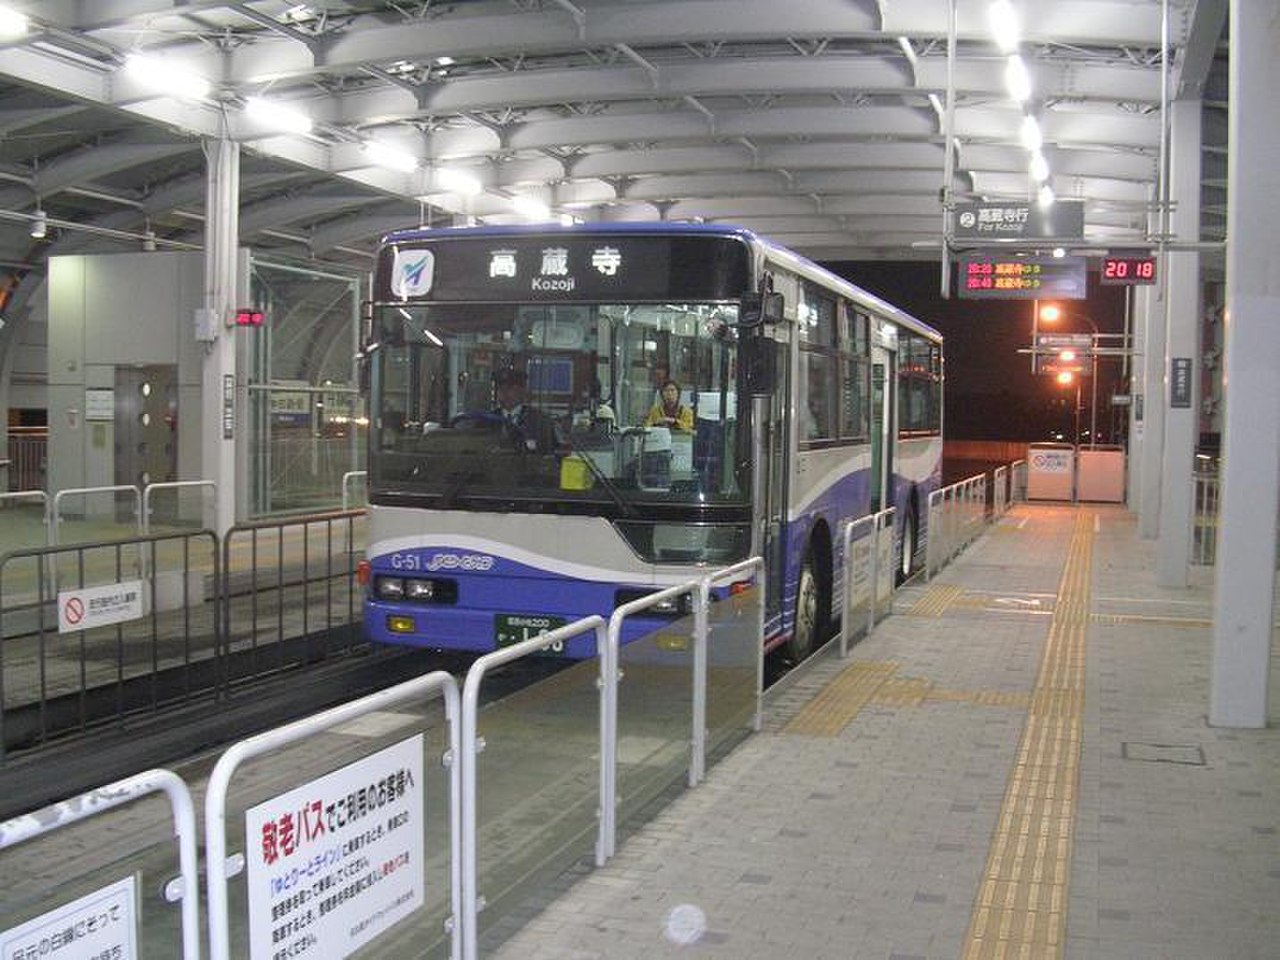 Полоса для автобусов Японии. Линии скоростного автобусного сообщения (BRT). Tokyo BRT.